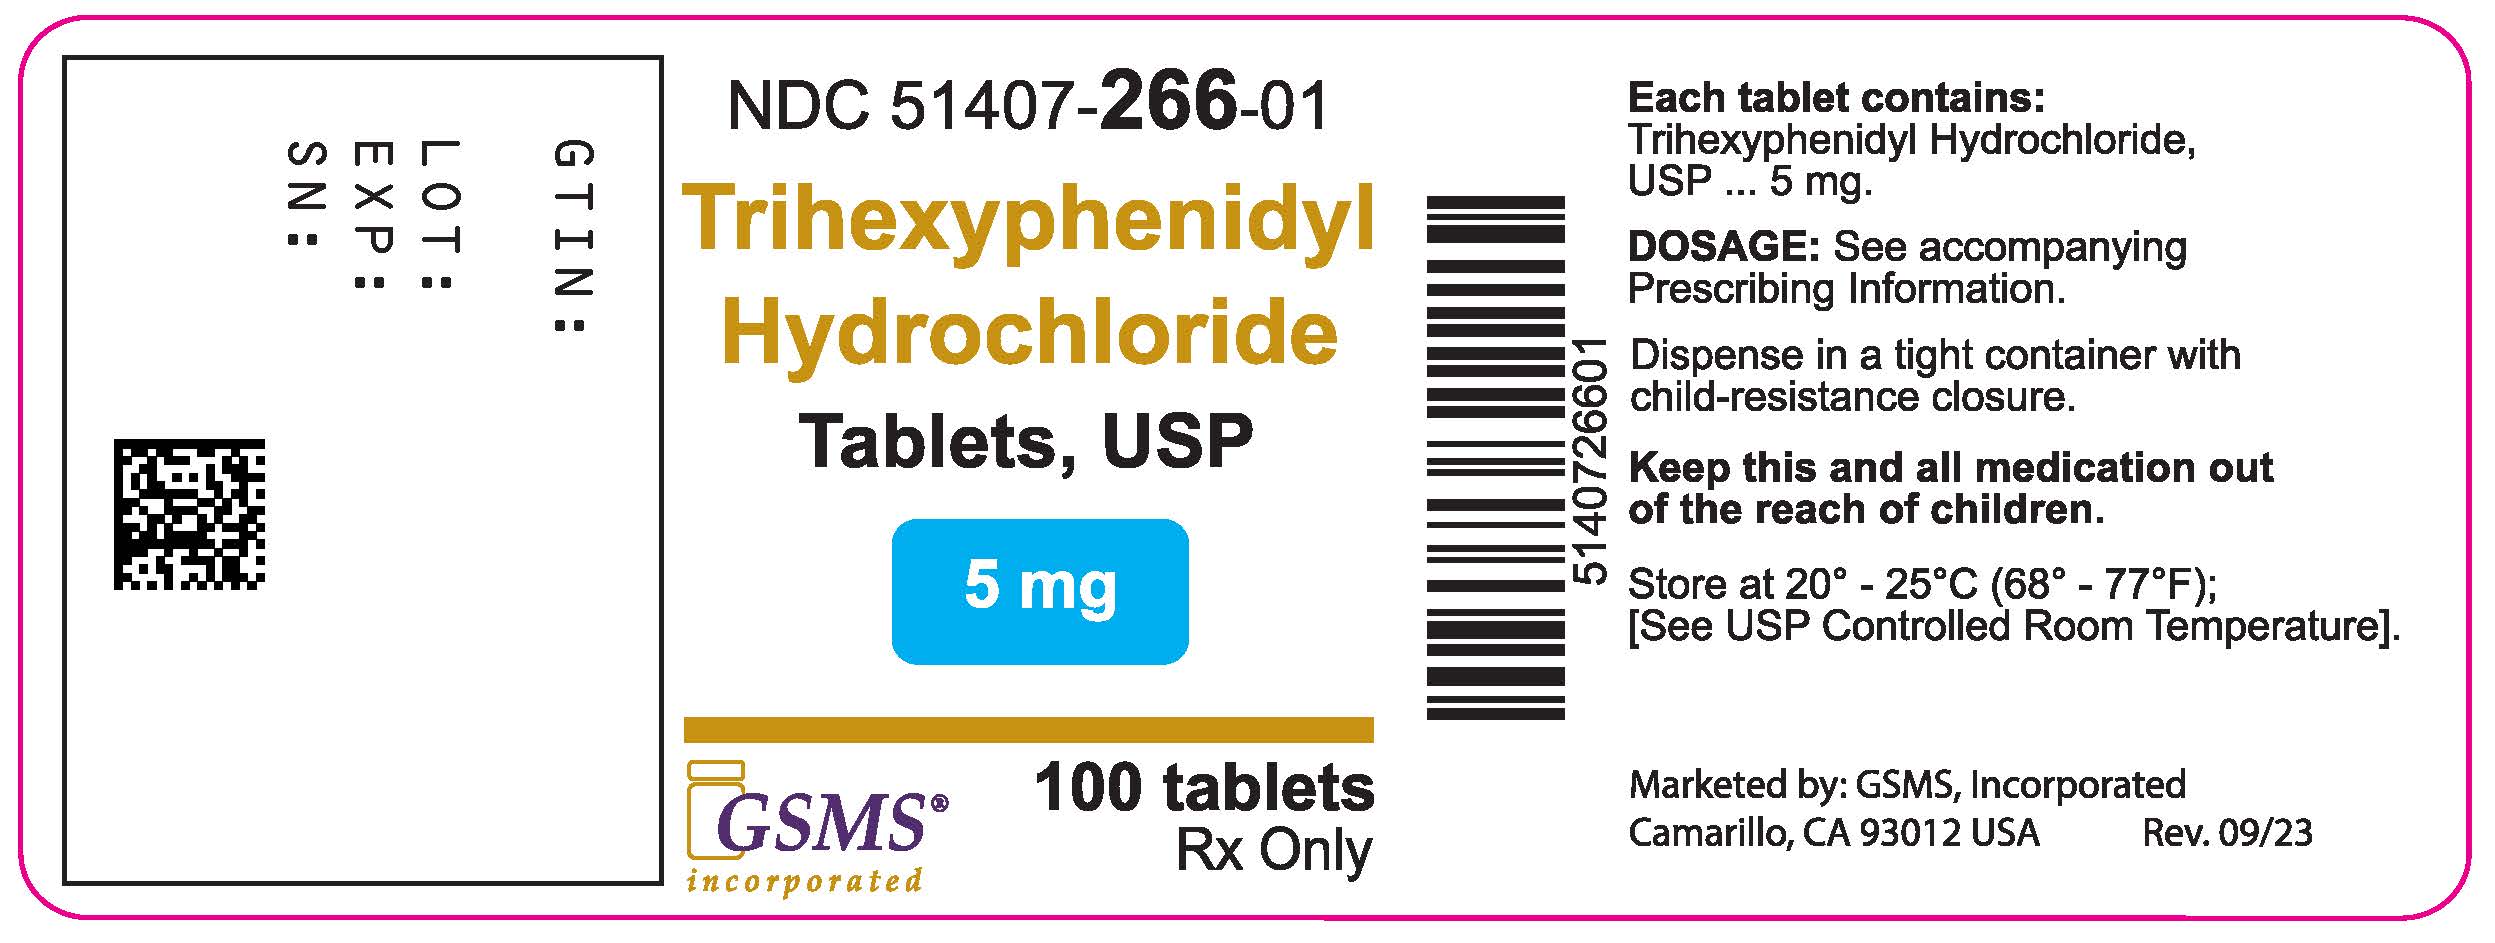 51407-266-01LB - Trihexyphenidyl Hydrochloride Tablets - Novitium - Rev 0923.jpg